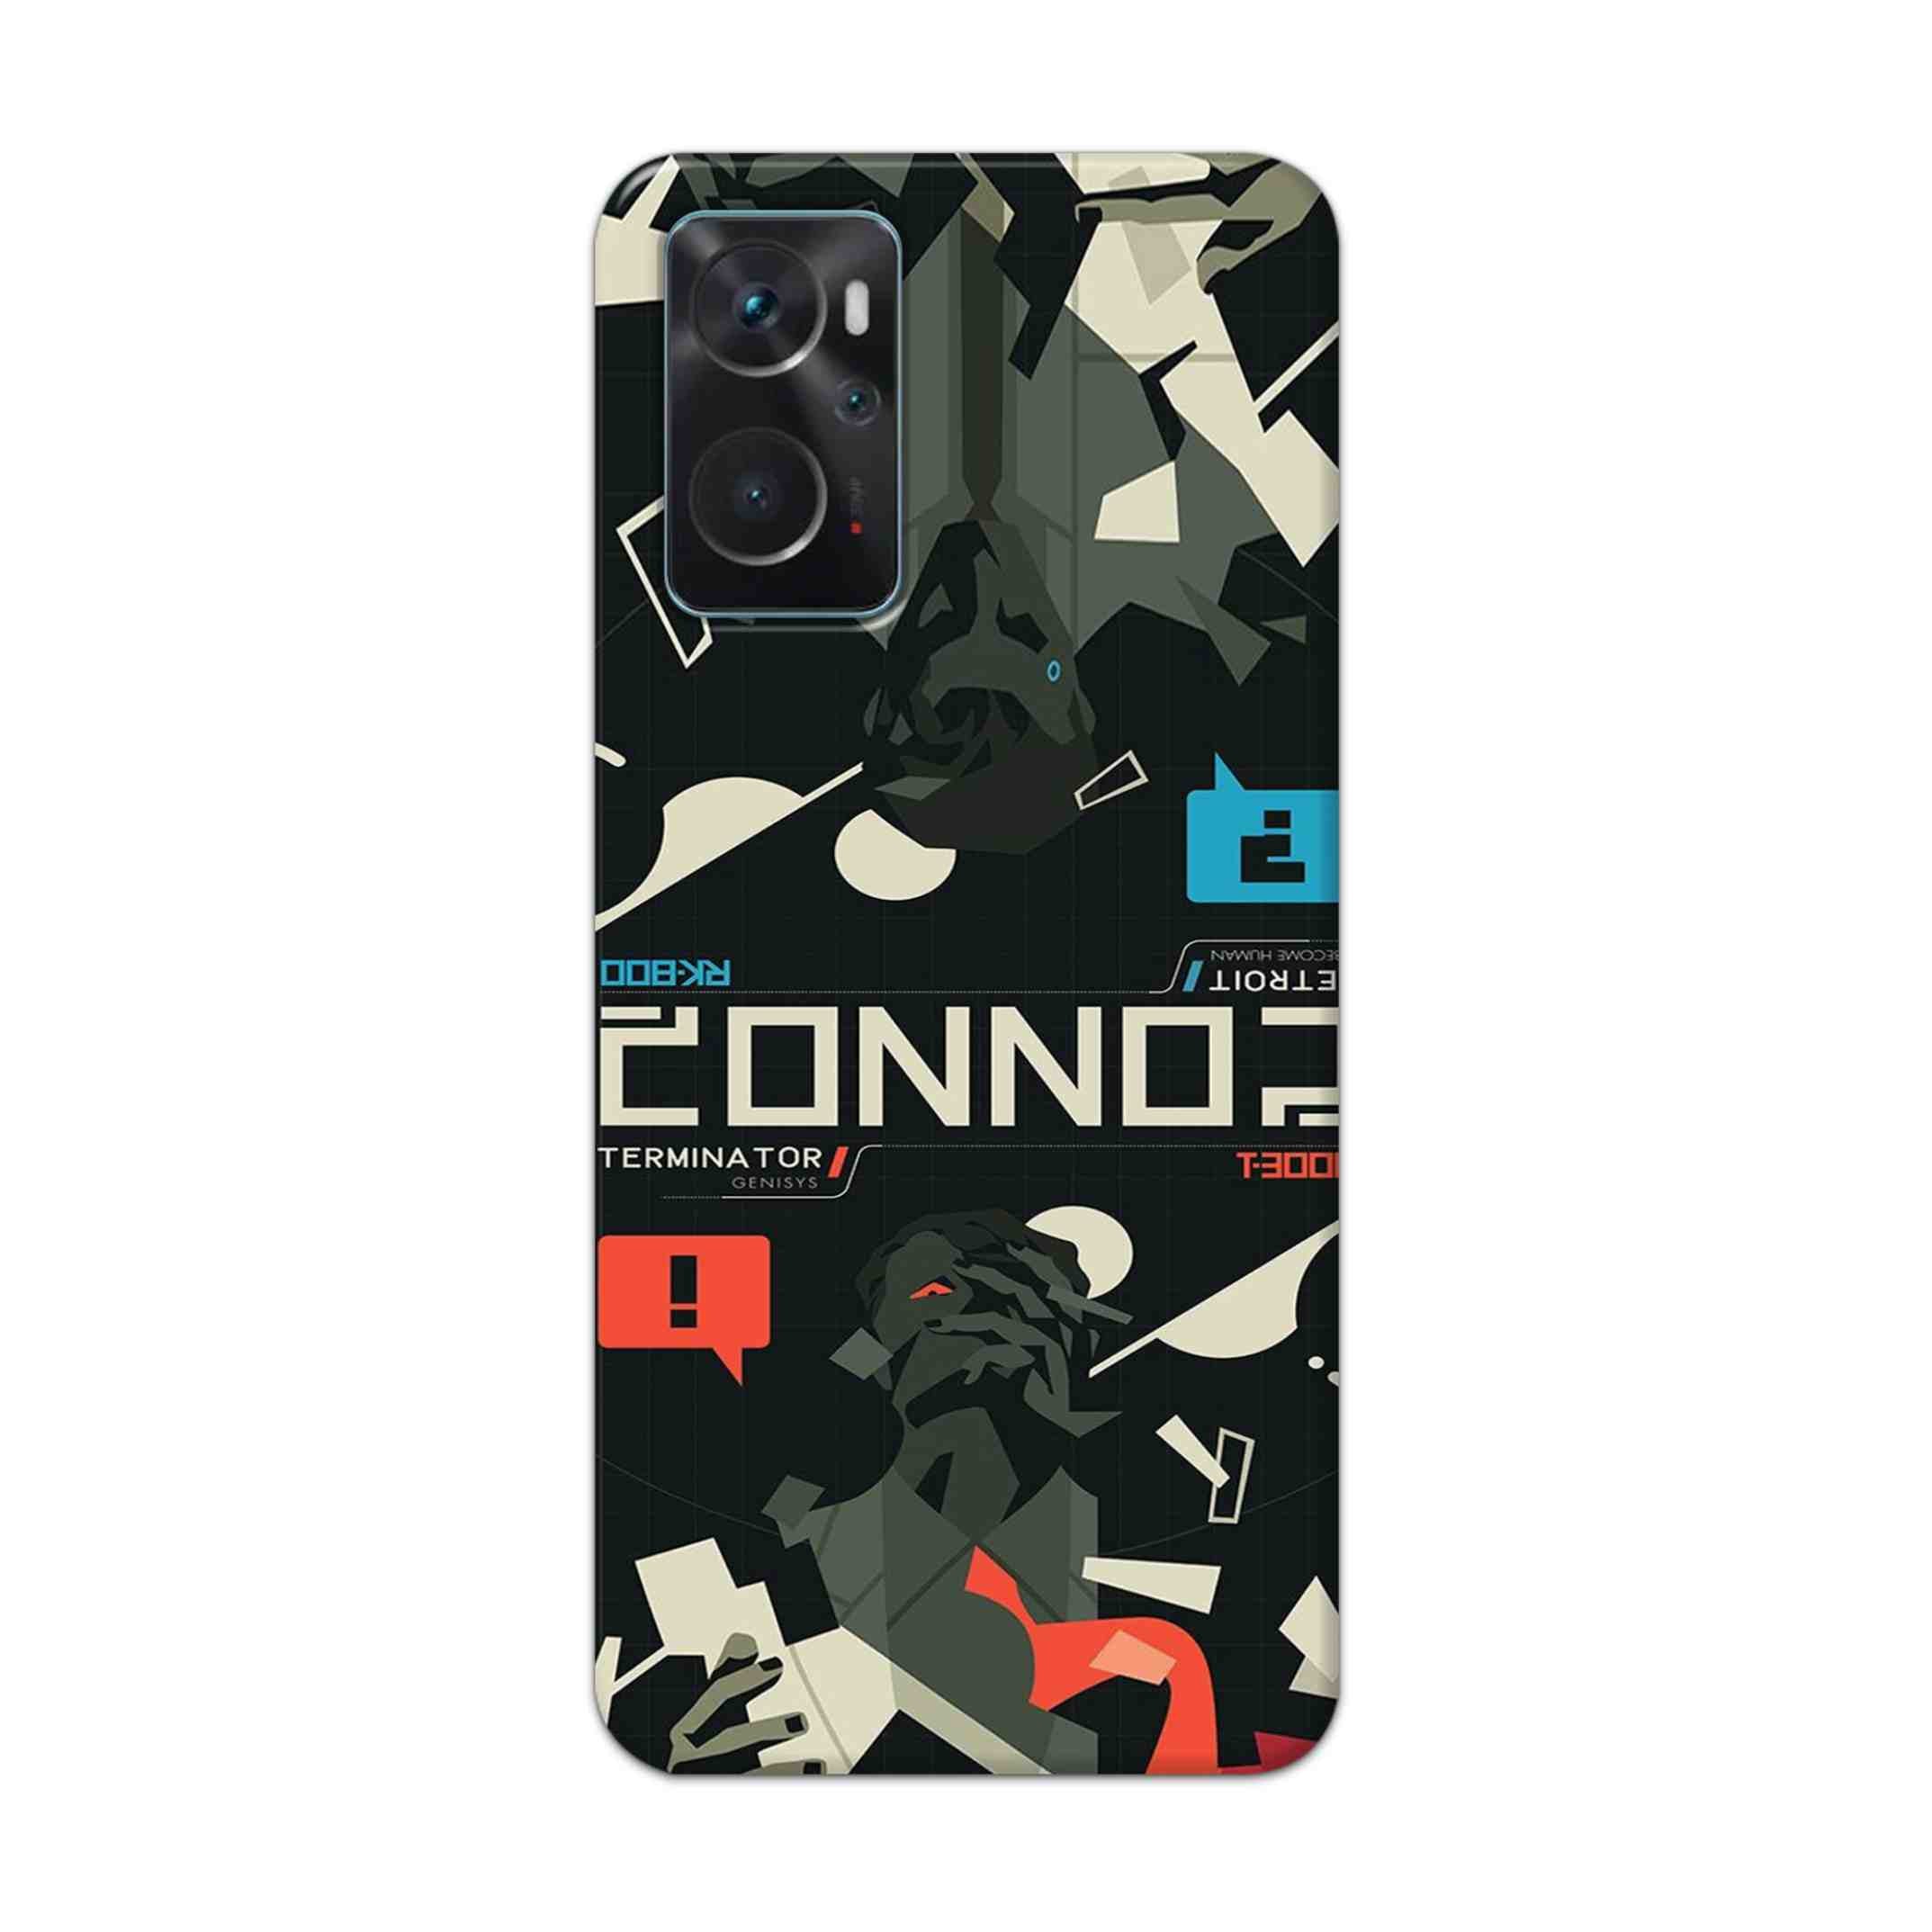 Buy Terminator Hard Back Mobile Phone Case Cover For Oppo K10 Online